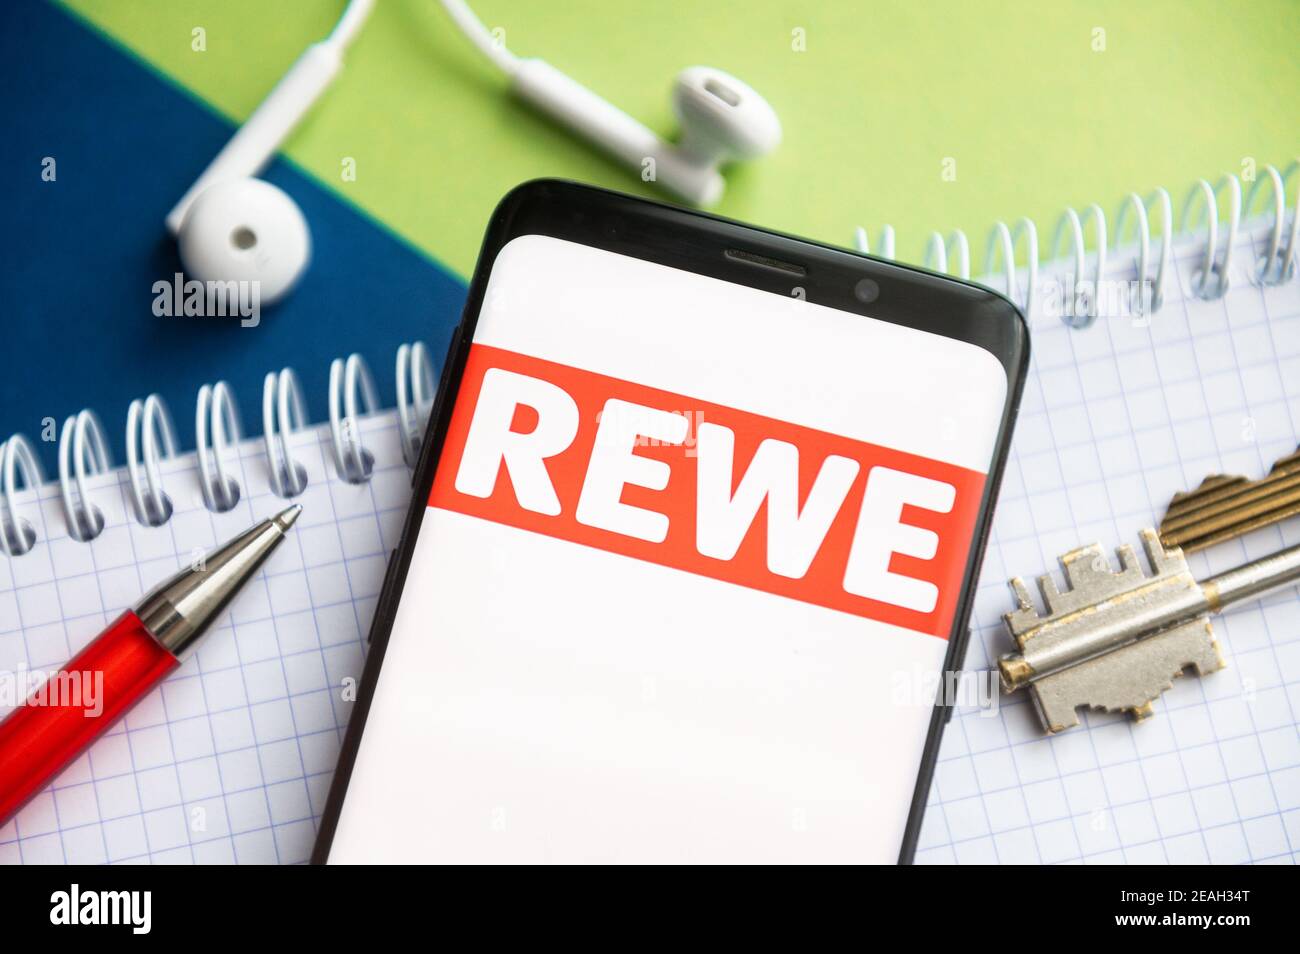 In dieser Abbildung wird ein Rewe-Logo auf einem Smartphone mit Stift,  Schlüssel, Buch und Headsets im Hintergrund angezeigt Stockfotografie -  Alamy